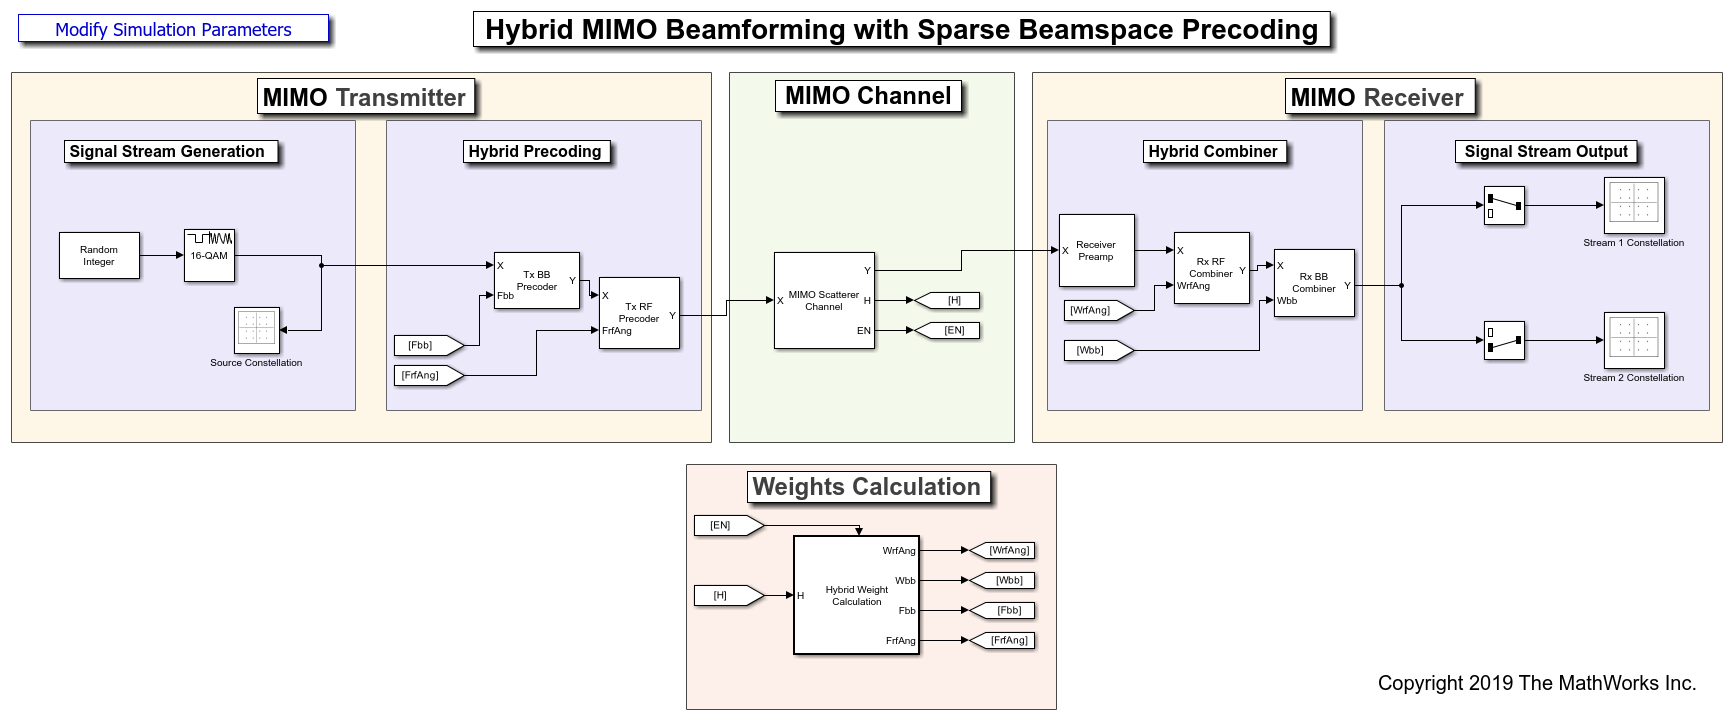 QSHB和HBPS混合MIMO波束形成算法